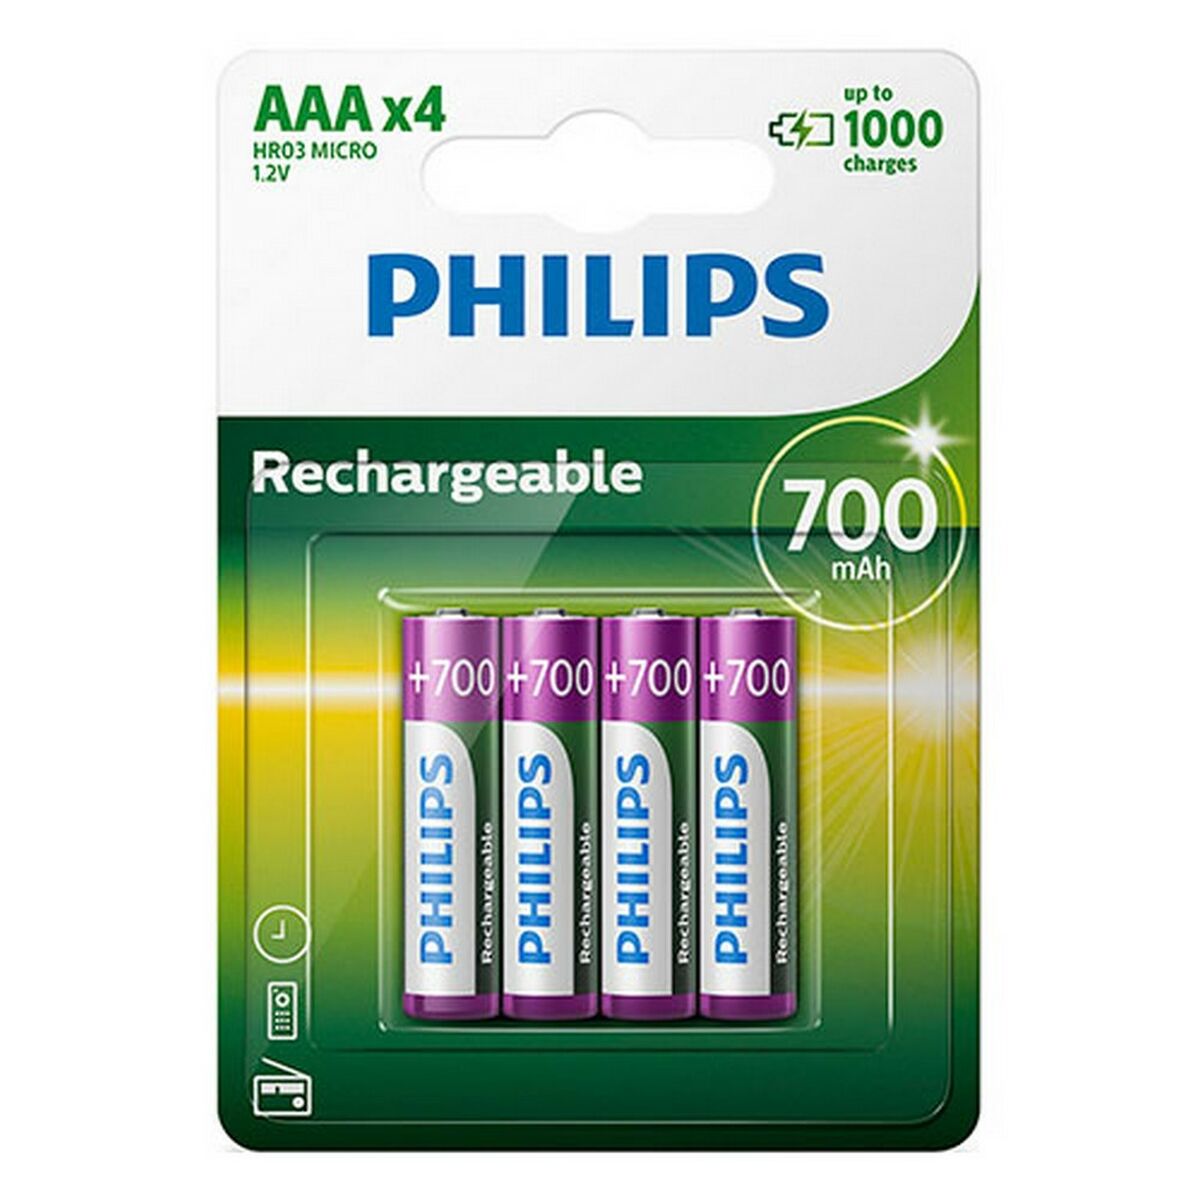 Osta tuote Ladattavat paristot Philips R03B4A70/10 700 mAh 1,2 V verkkokaupastamme Korhone: Urheilu & Vapaa-aika 20% alennuksella koodilla VIIKONLOPPU